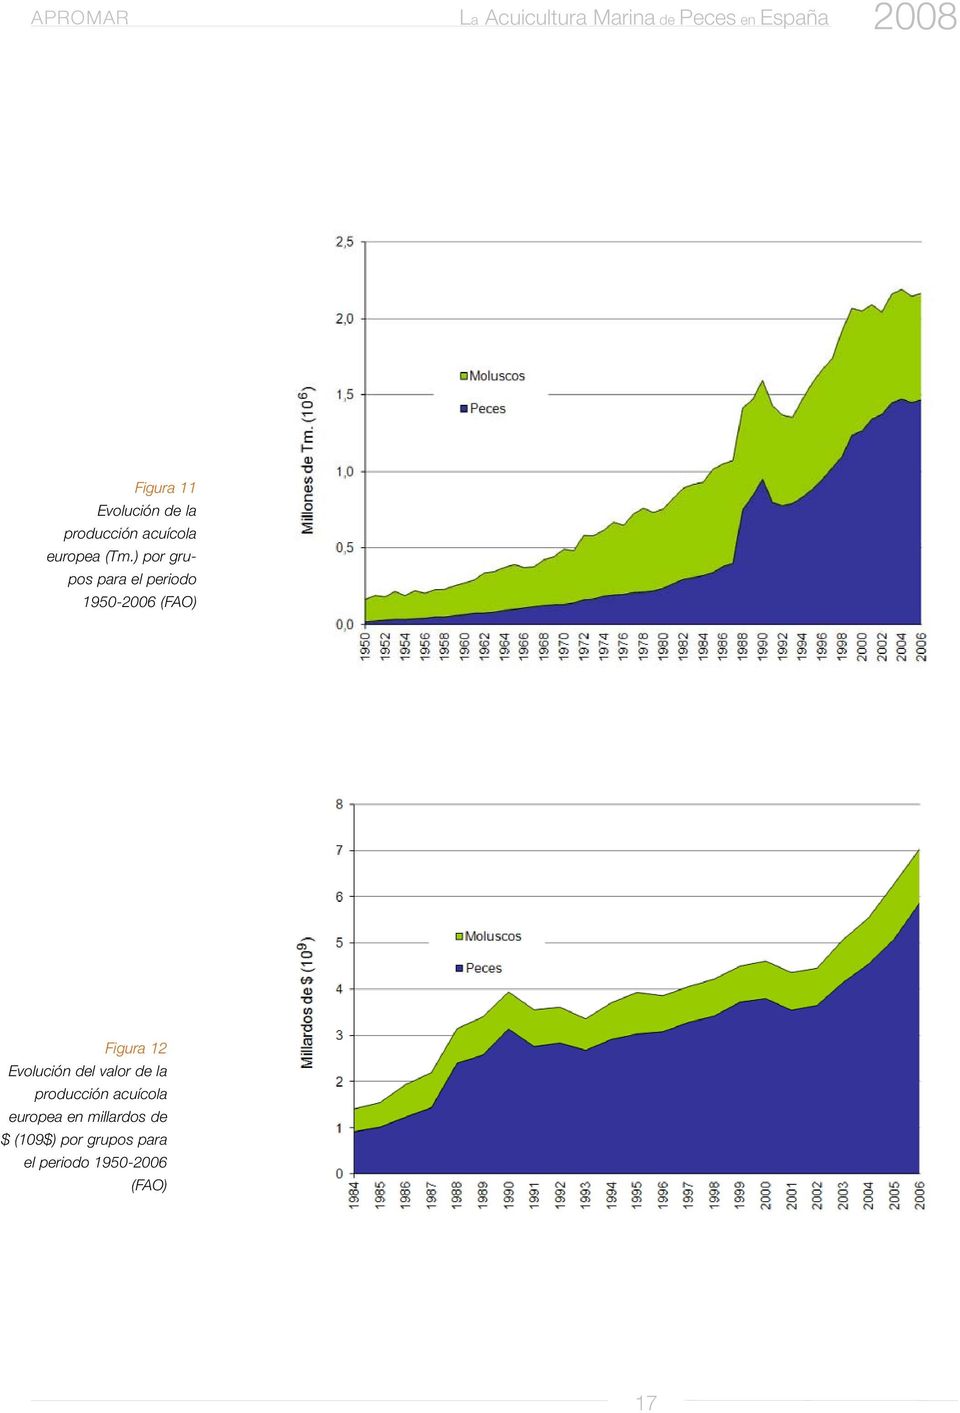 Evolución del valor de la producción acuícola europea en